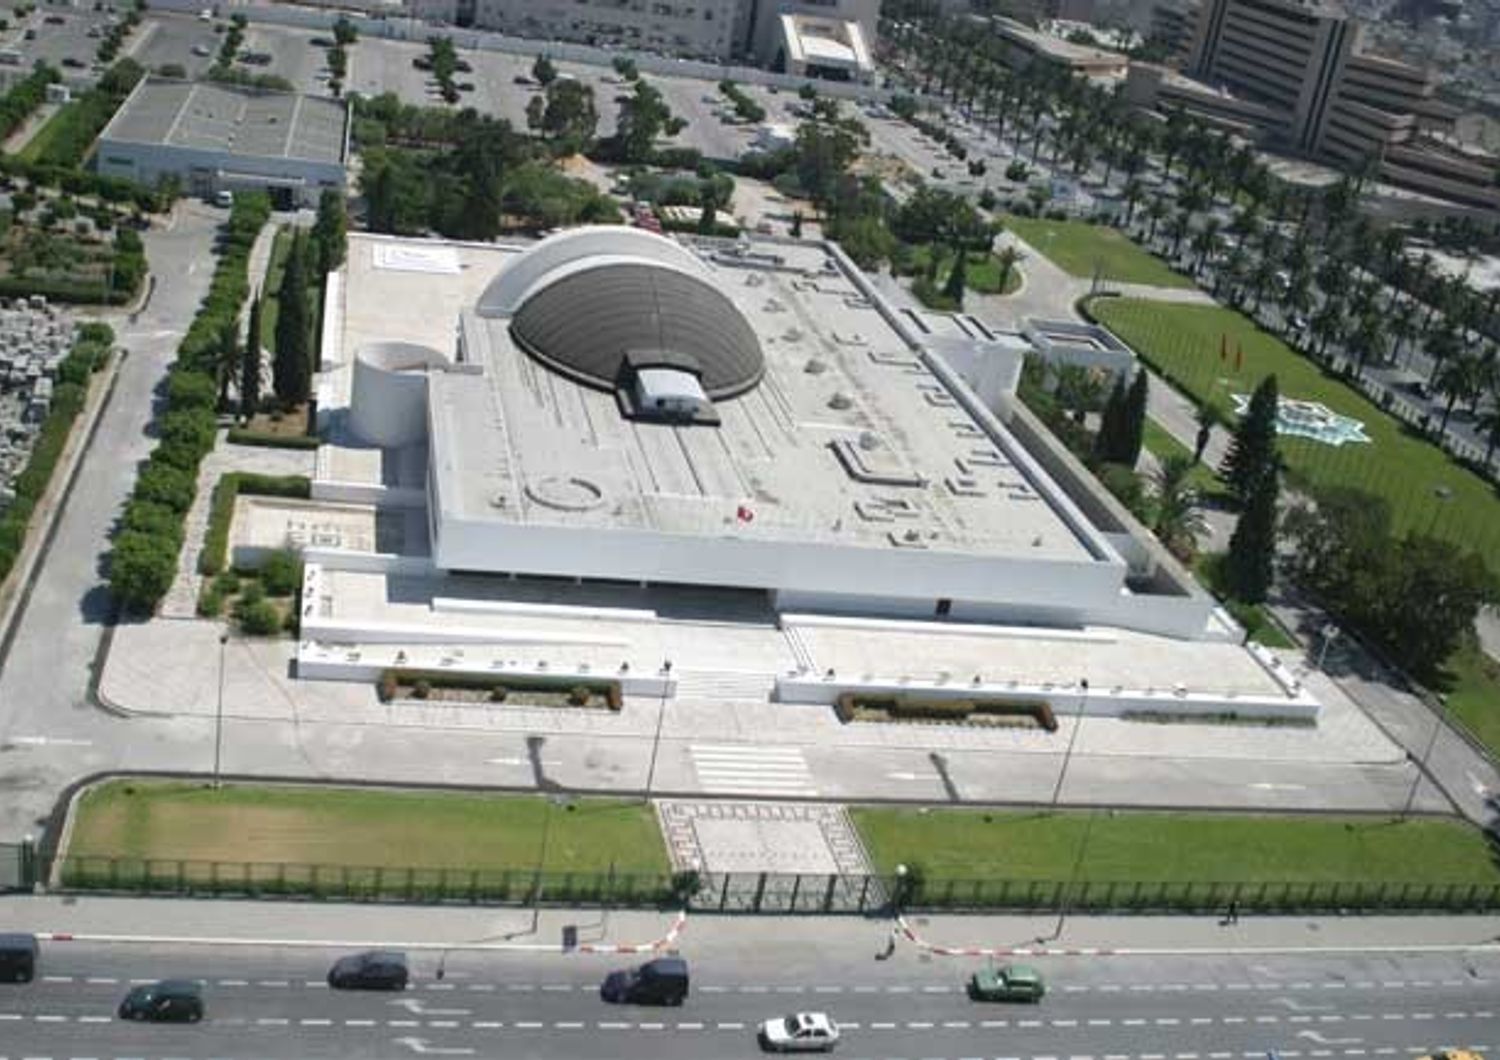 Tunisia - Tunisi, Palazzo dei Congressi (Tunisia 2020)